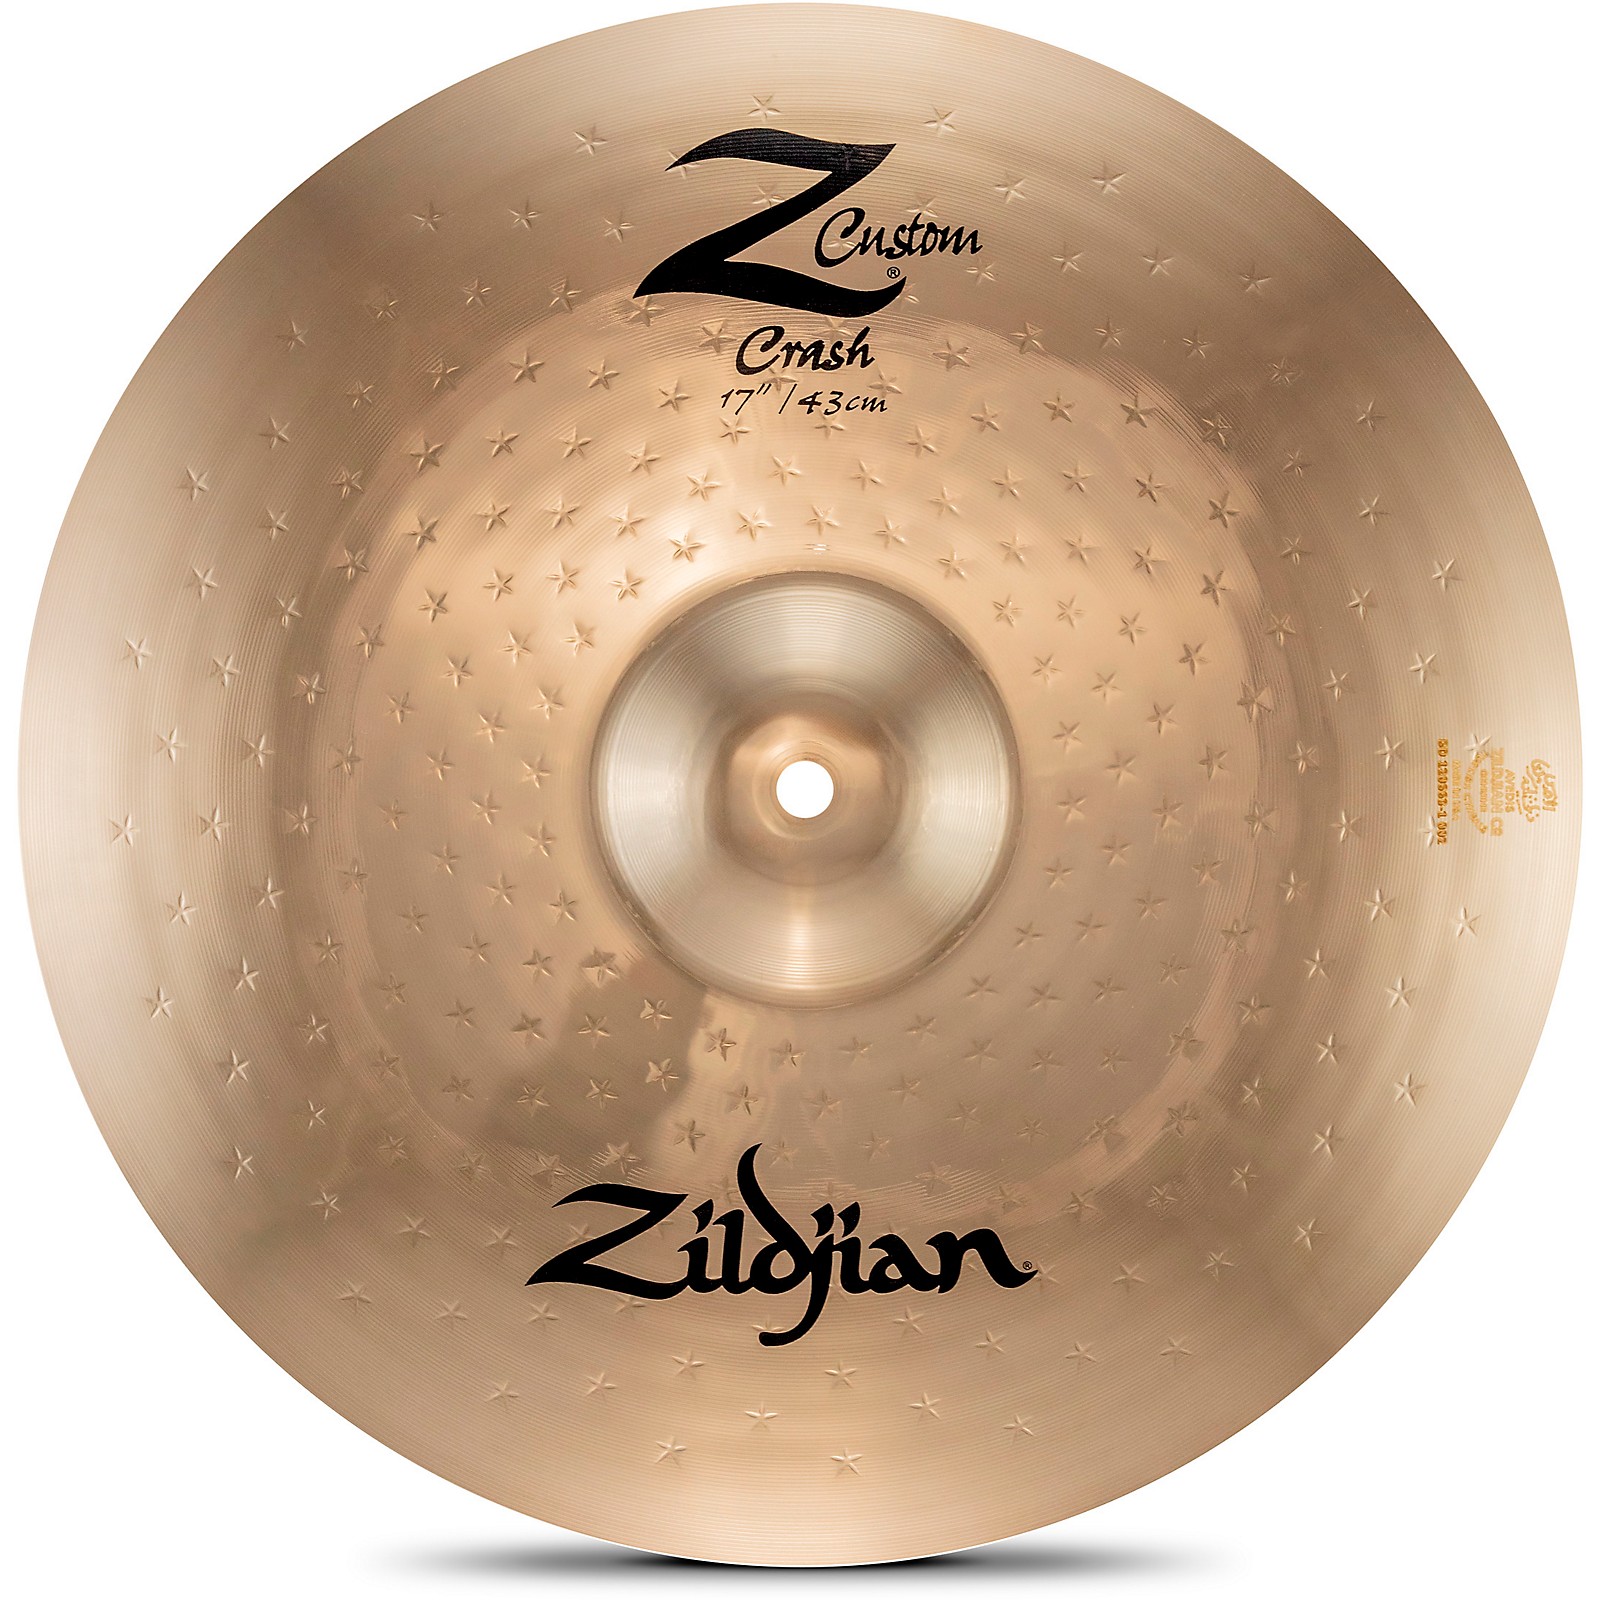 Zildjian Z Custom Crash Cymbal 17 in. | Guitar Center